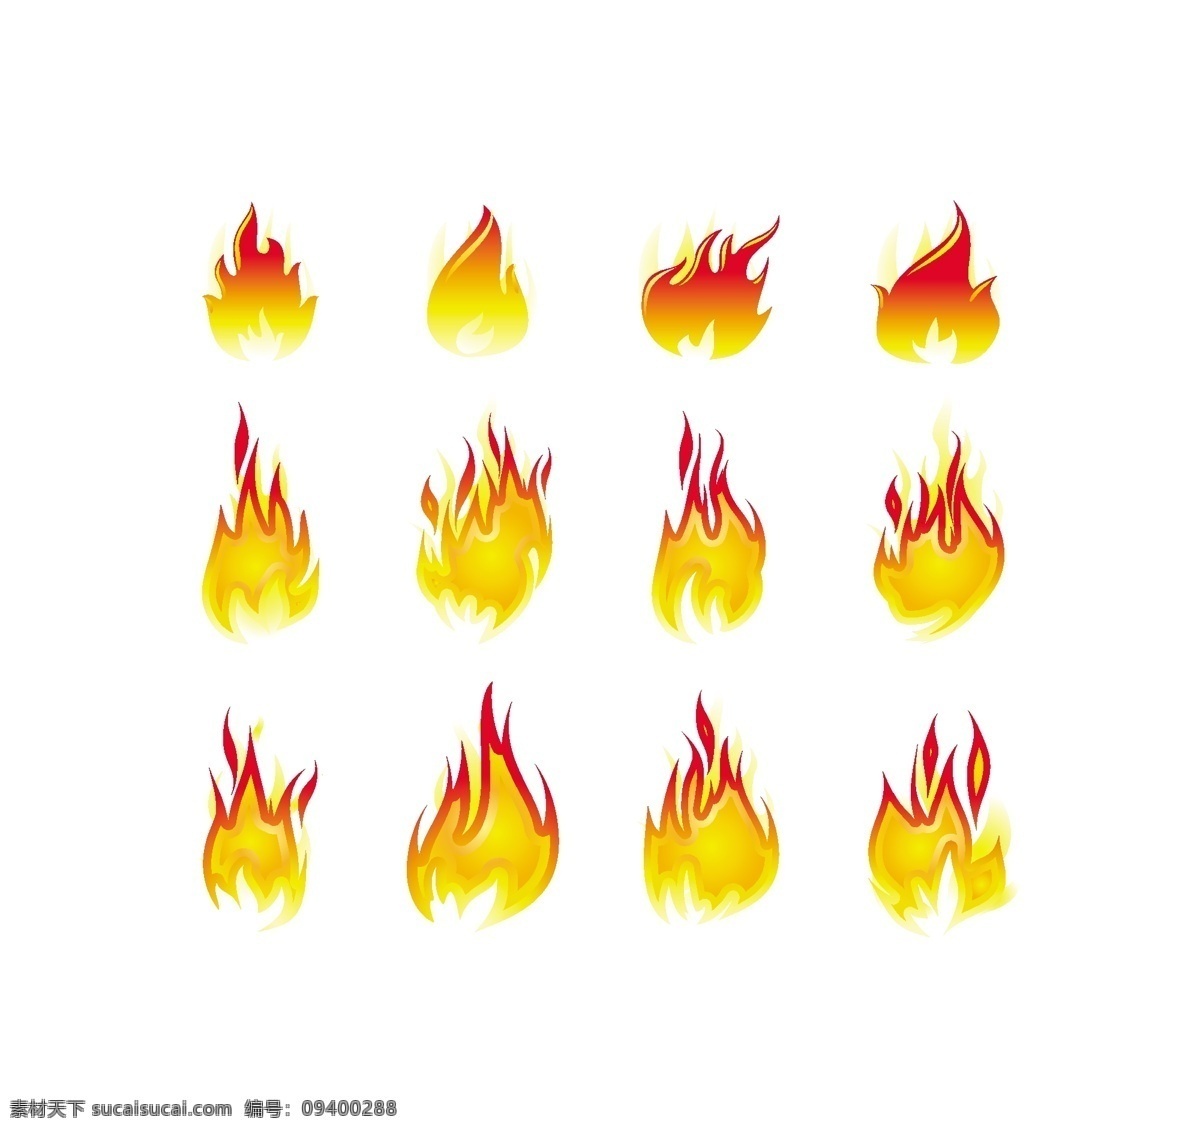 消防设计元素 火 火元素 元素 元素矢量火 矢量 coreldraw 火元素ai 火元素集 火元素的向量 向量 免费下载消防